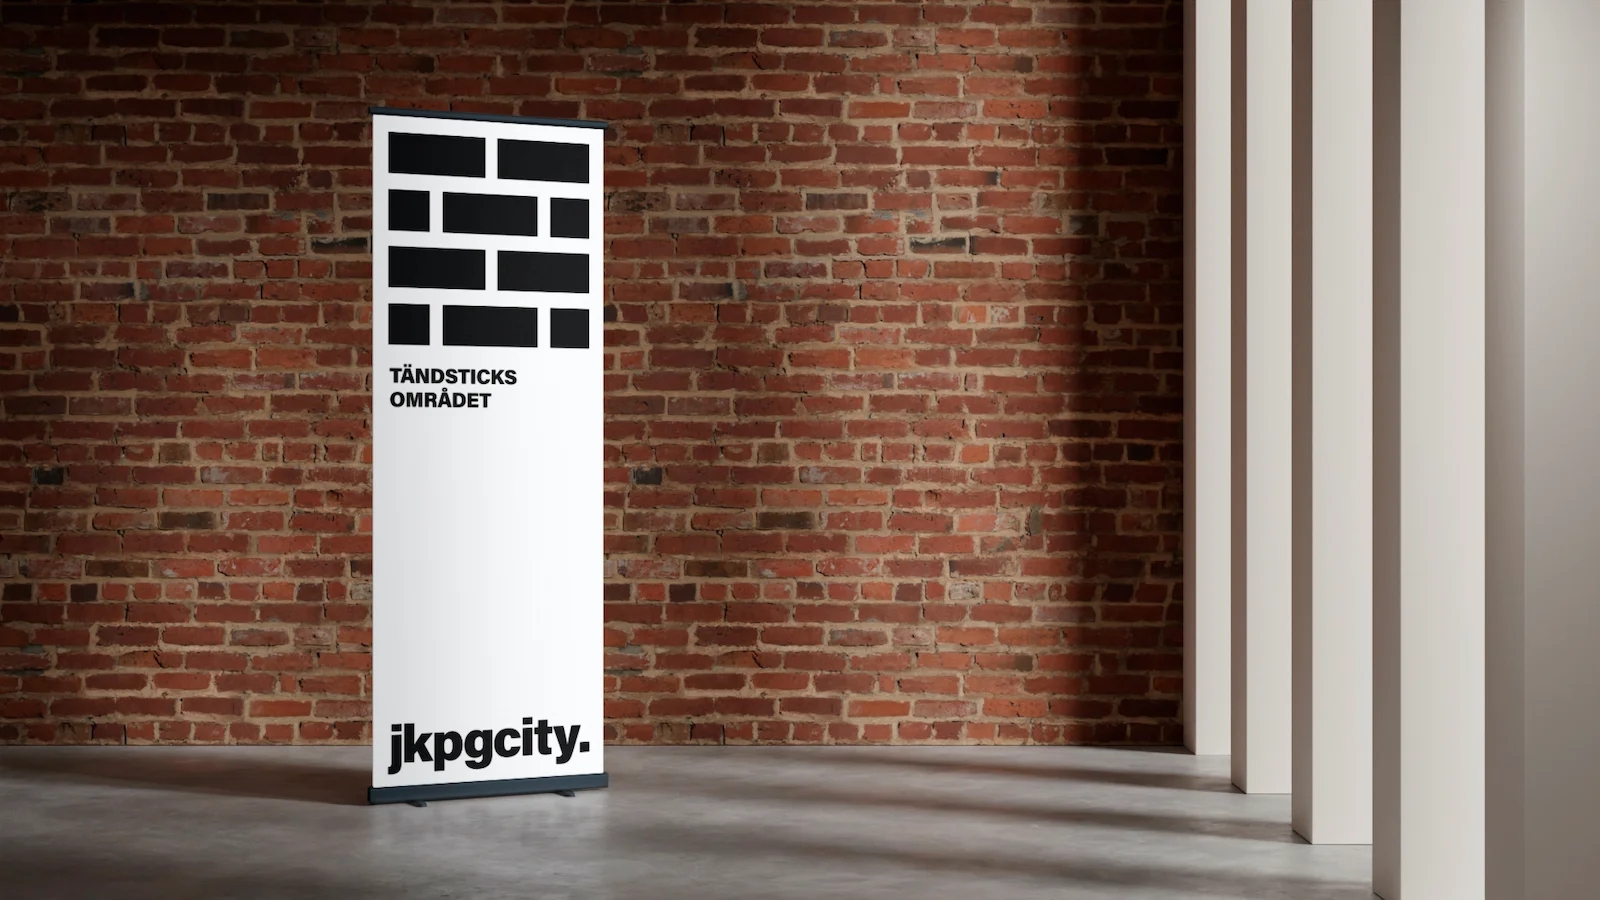 Plansch i ett rum framför en tegelstensvägg med jkpg city reklam - Ny Studio